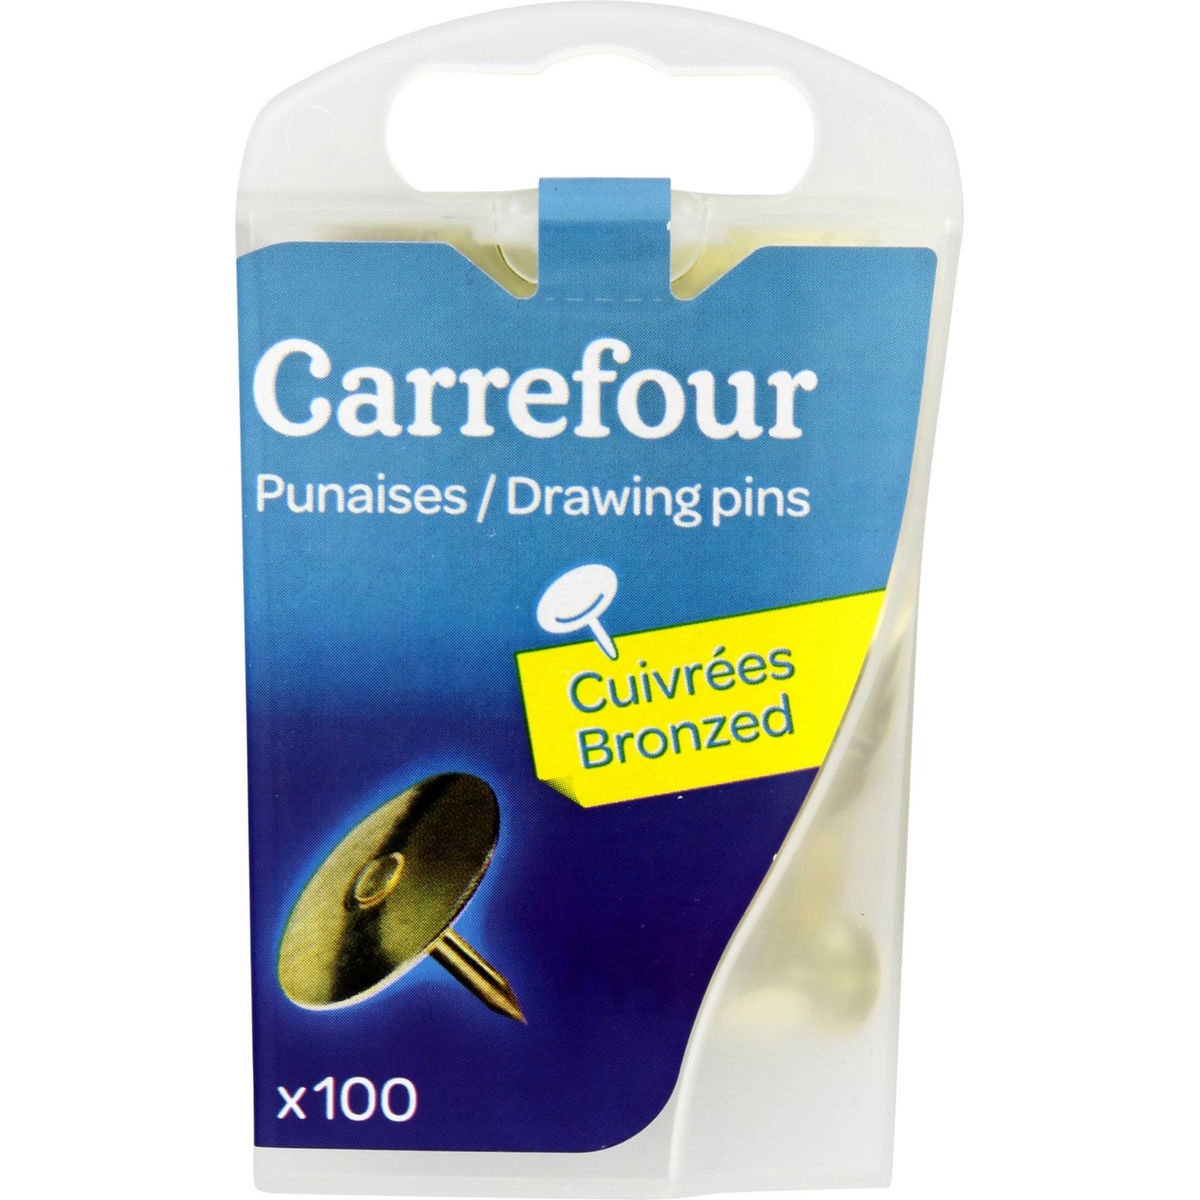 Carrefour 100 punaises cuivrées